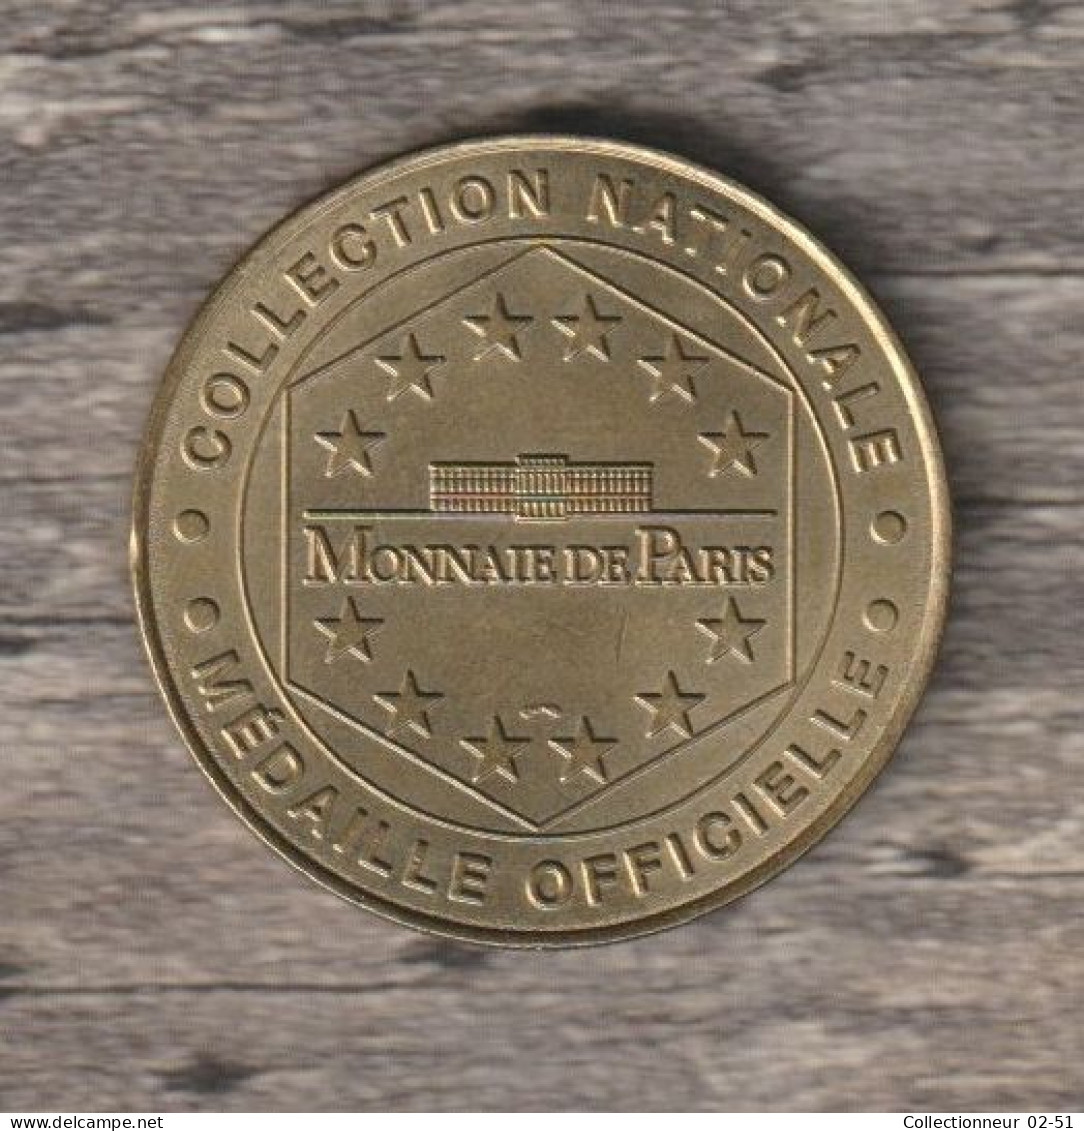 Monnaie De Paris : Futuroscope Le Parc Européen De L'image - 1999 - Sin Fecha